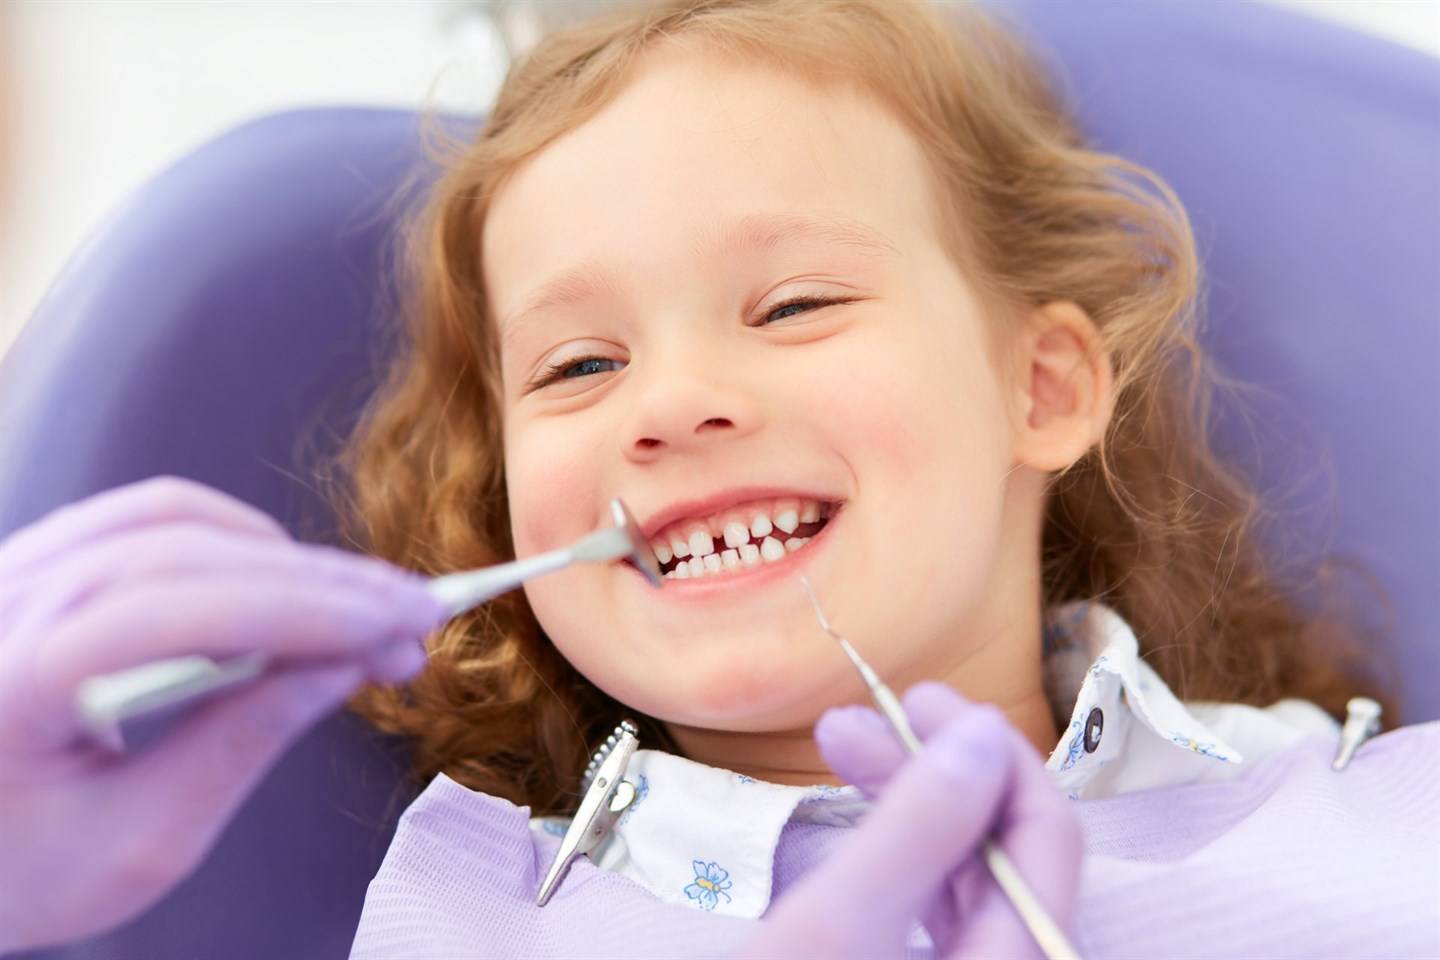 Герметизация зубов у детей - процедура герметизации и последствия